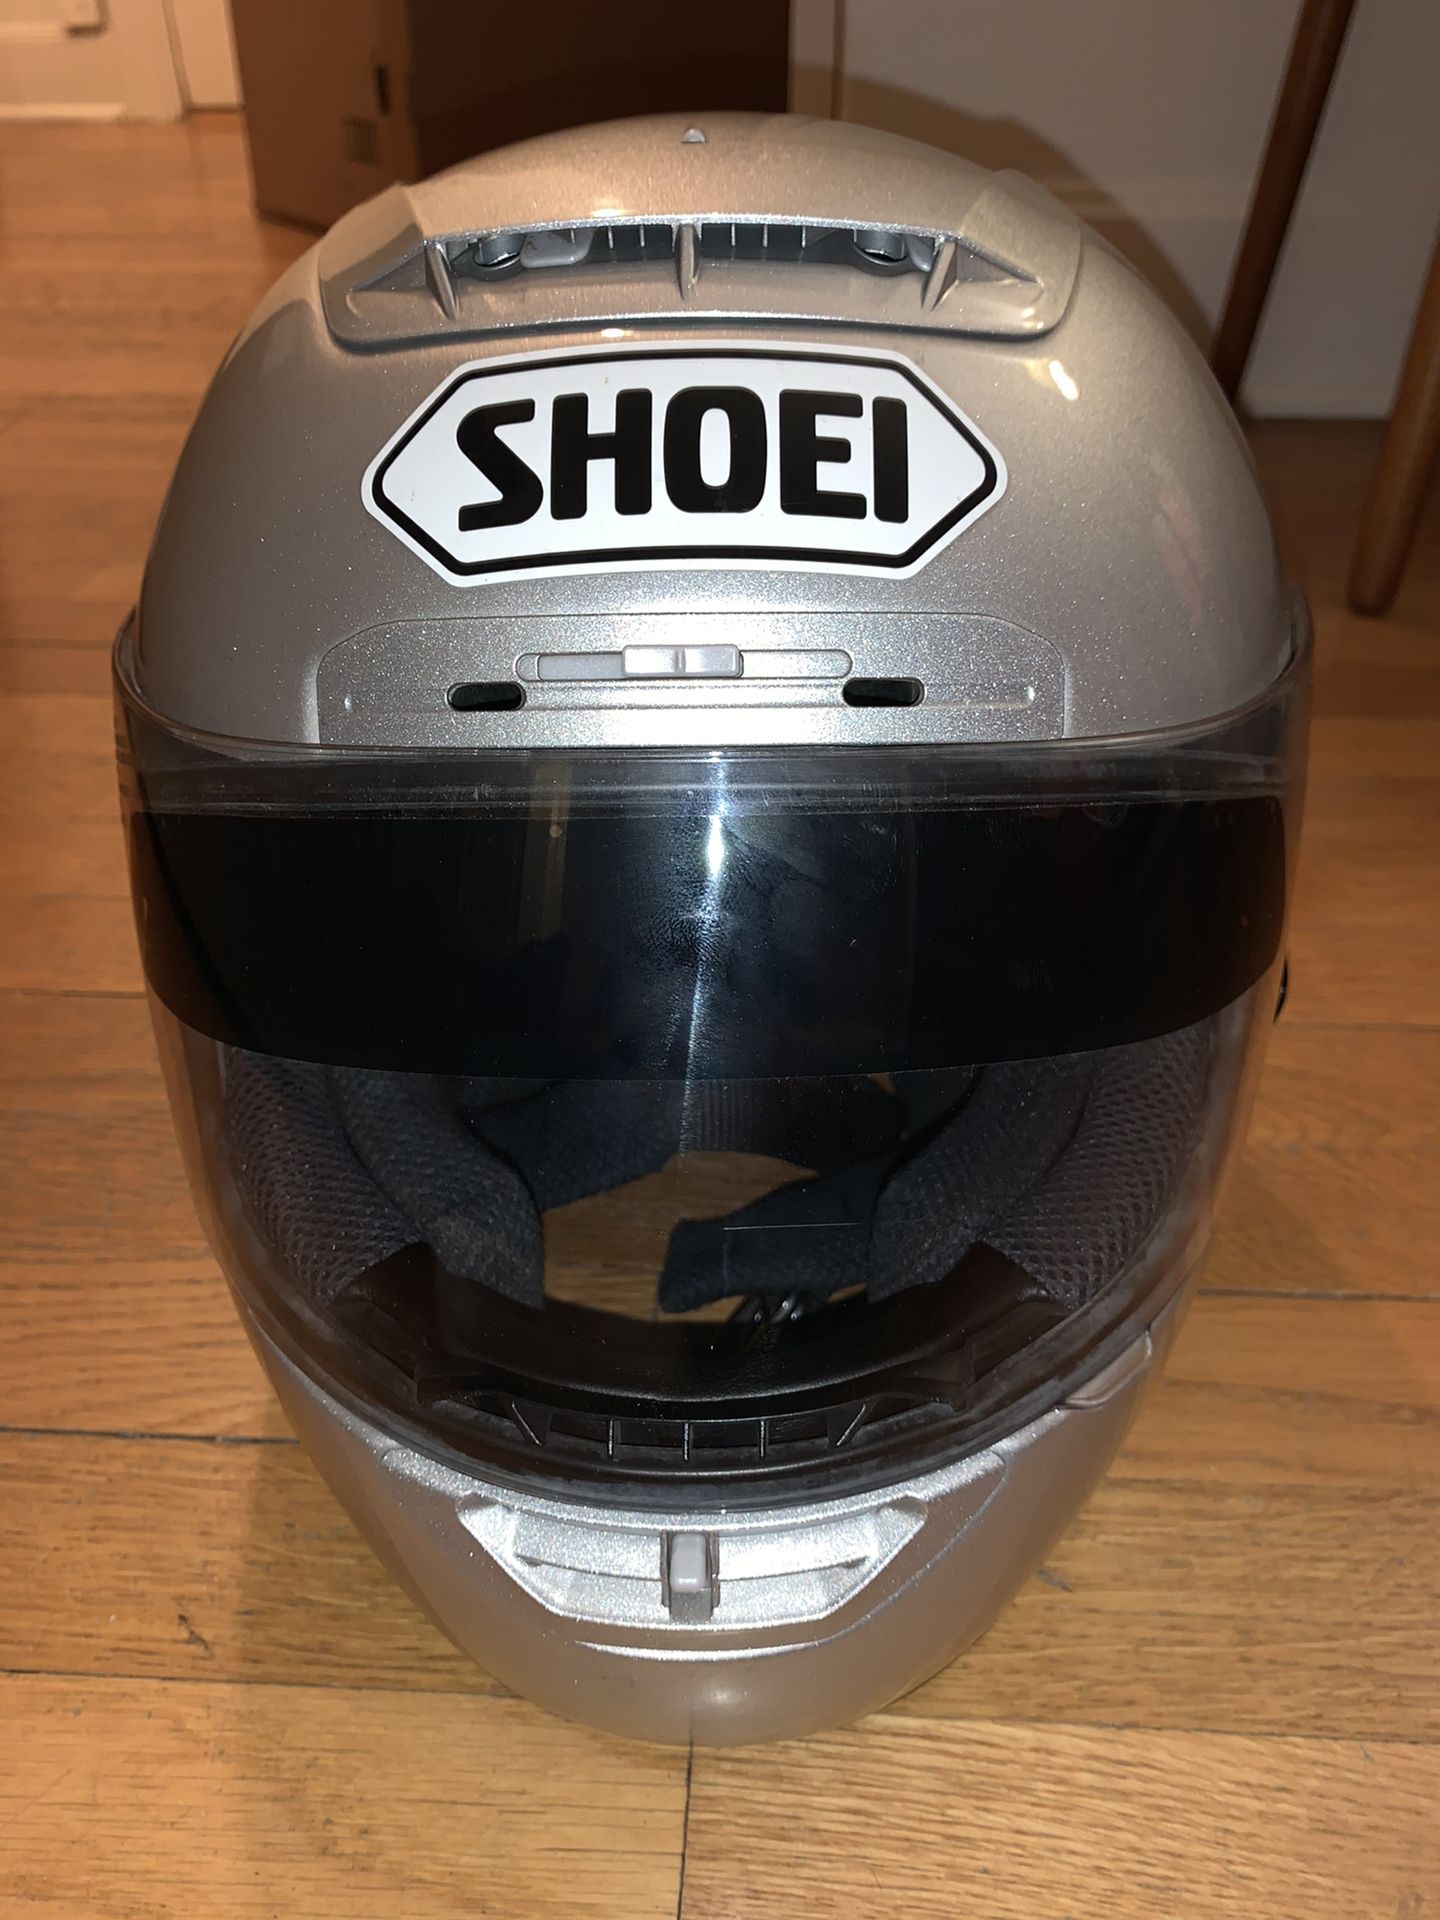 Shoei X-Eleven X-11, Gloss, Silver Motorcycle Race Helmet, Large